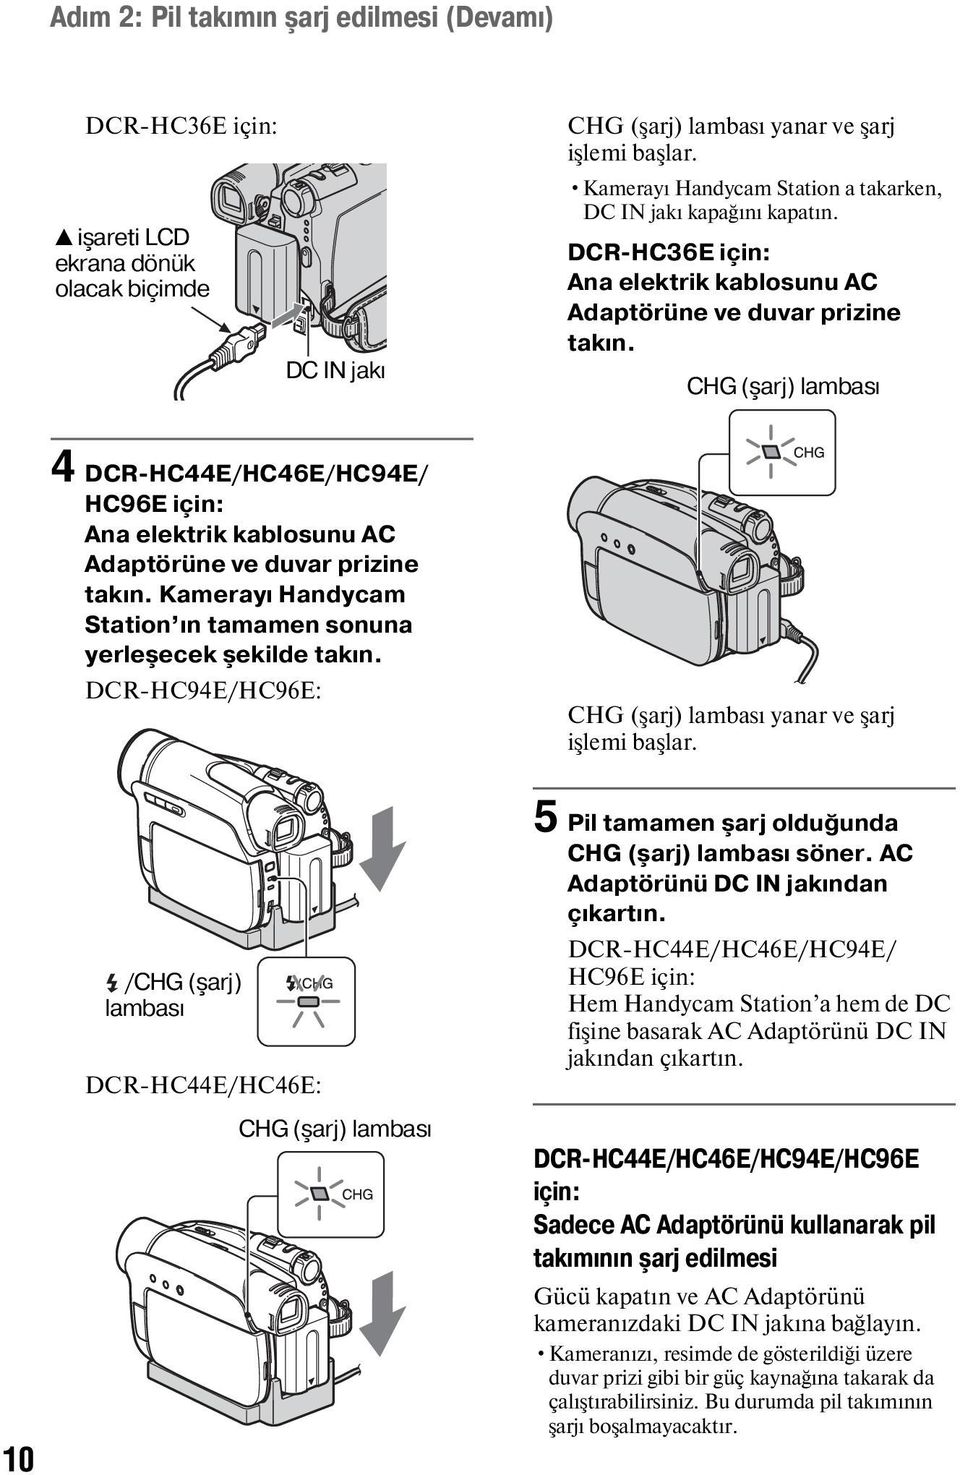 CHG (şarj) lambası 4 DCR-HC44E/HC46E/HC94E/ HC96E için: Ana elektrik kablosunu AC Adaptörüne ve duvar prizine takın. Kamerayı Handycam Station ın tamamen sonuna yerleşecek şekilde takın.